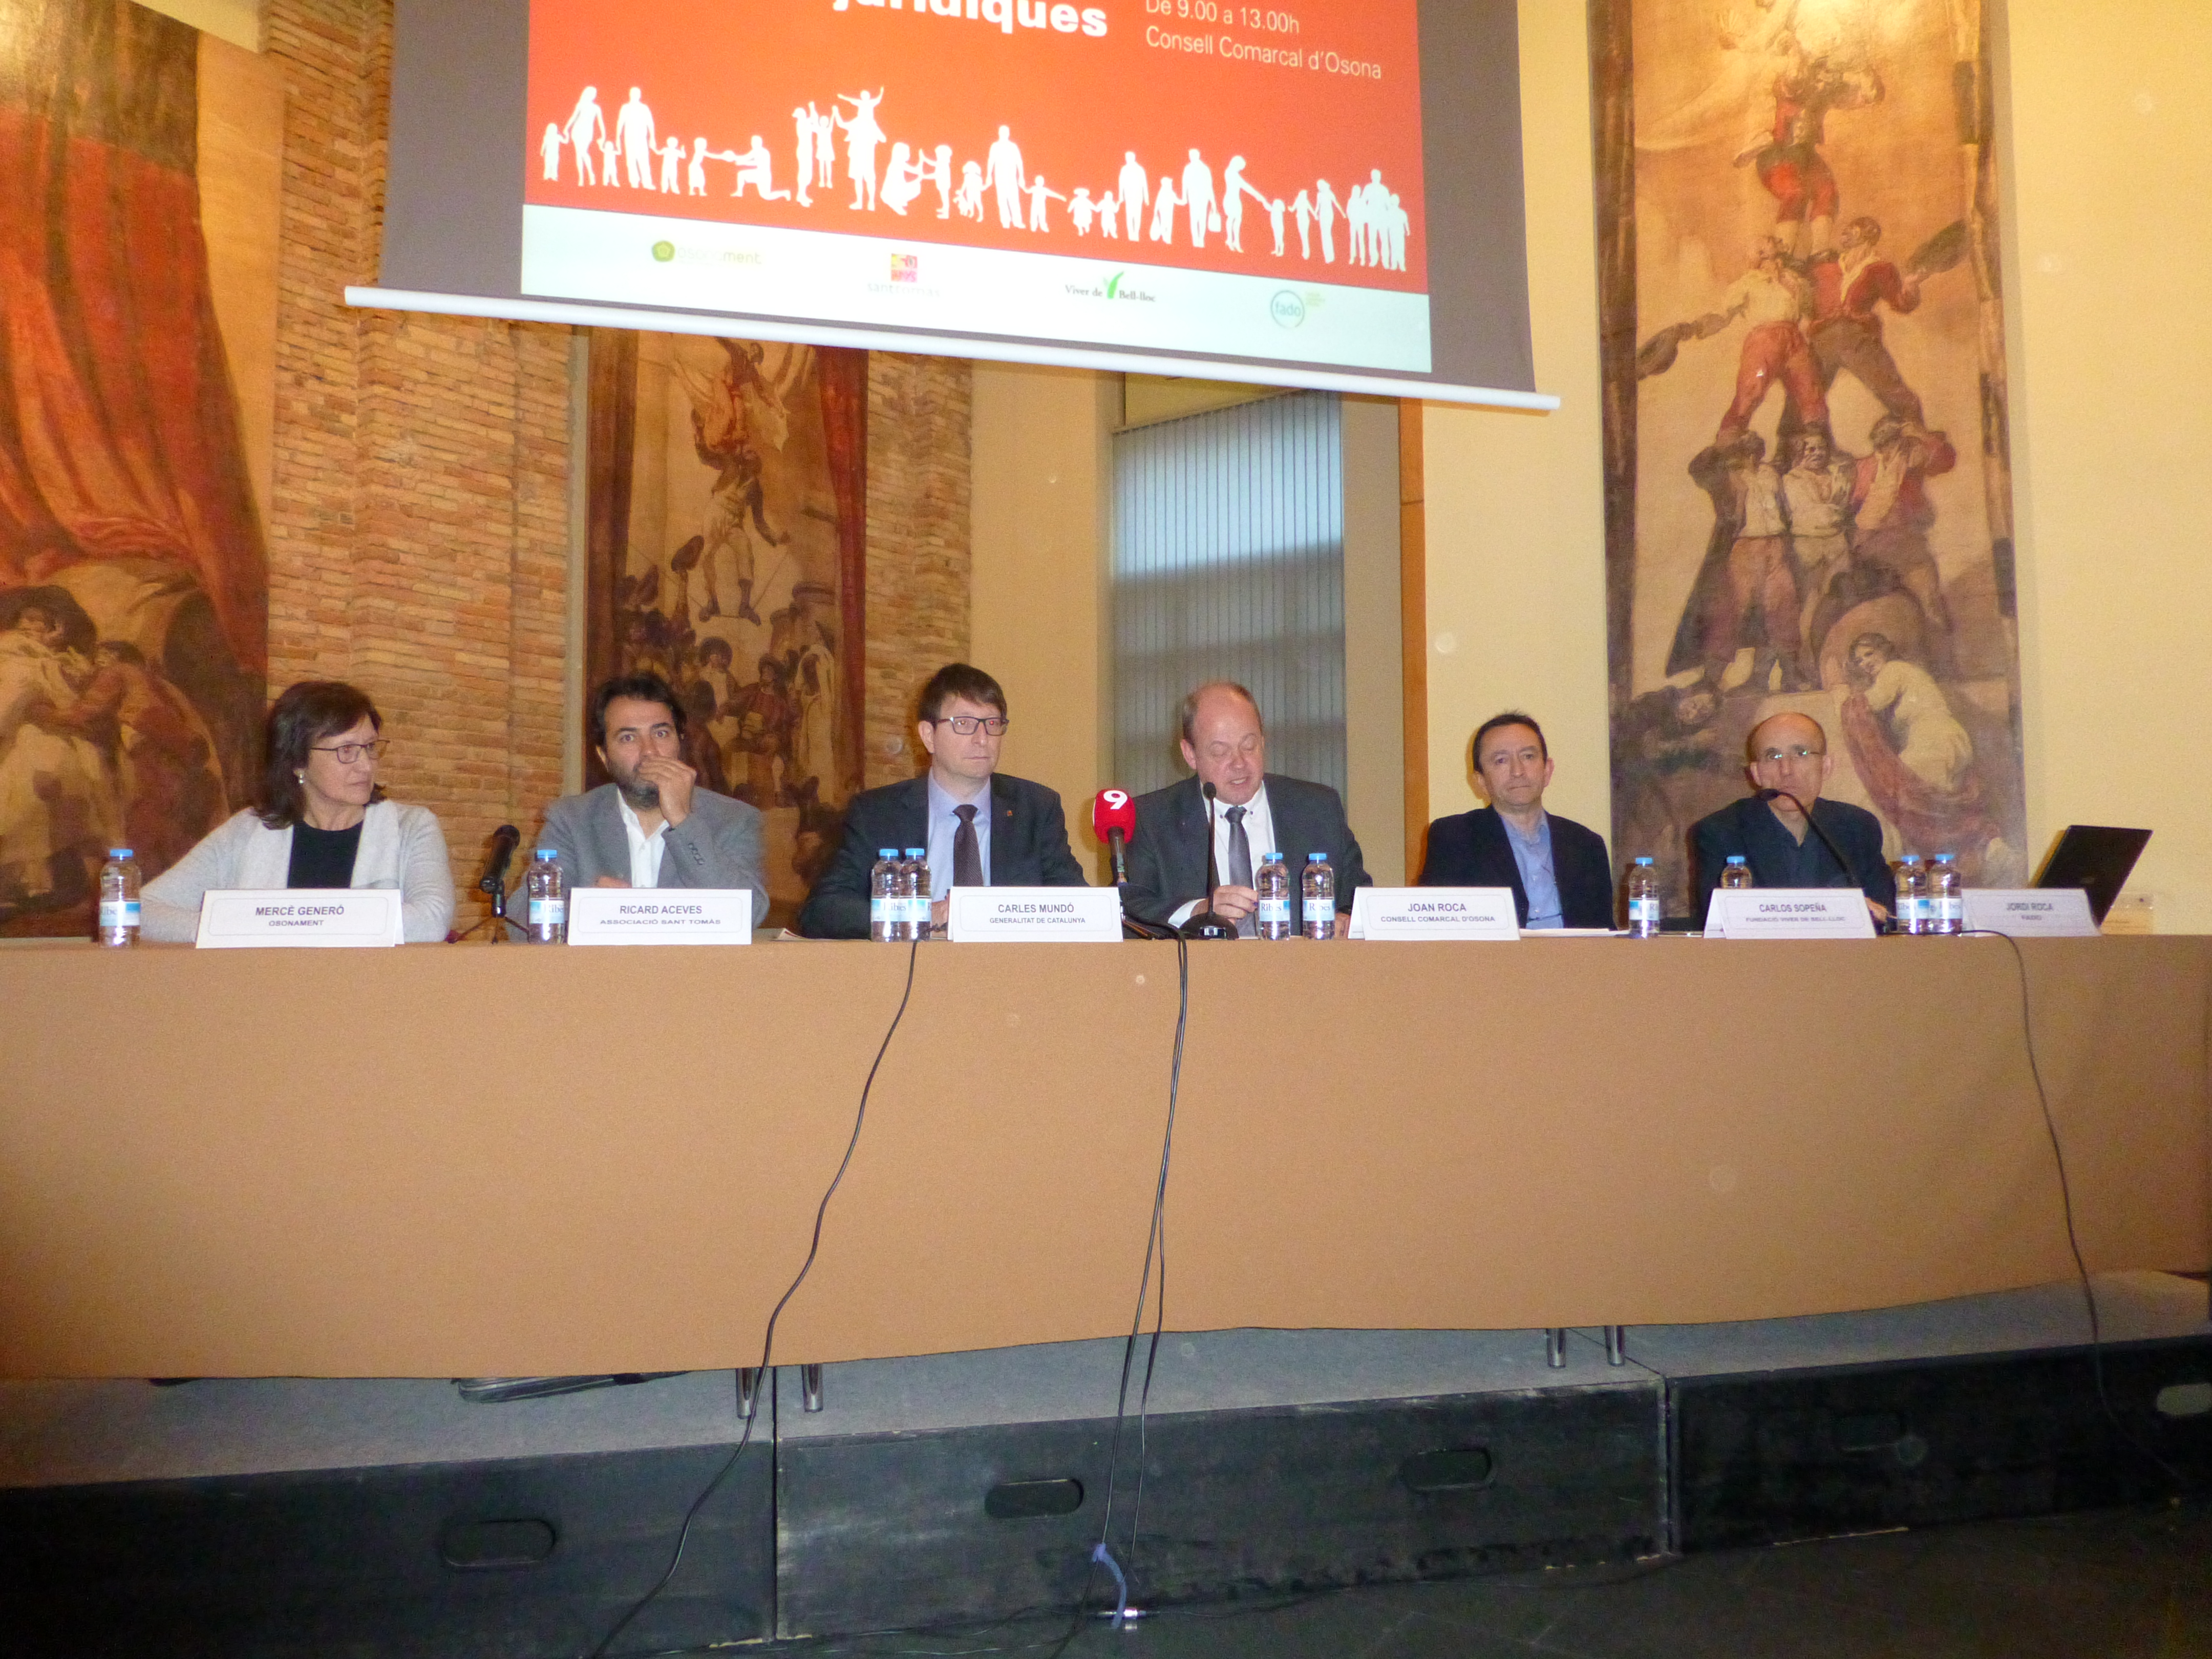 D'esquerra a dreta. Mercè Generó, Ricard Aceves,, Carles Mundó, Joan roca, Carlos Sopeña i Jordi Roca durant l'acte de presentació